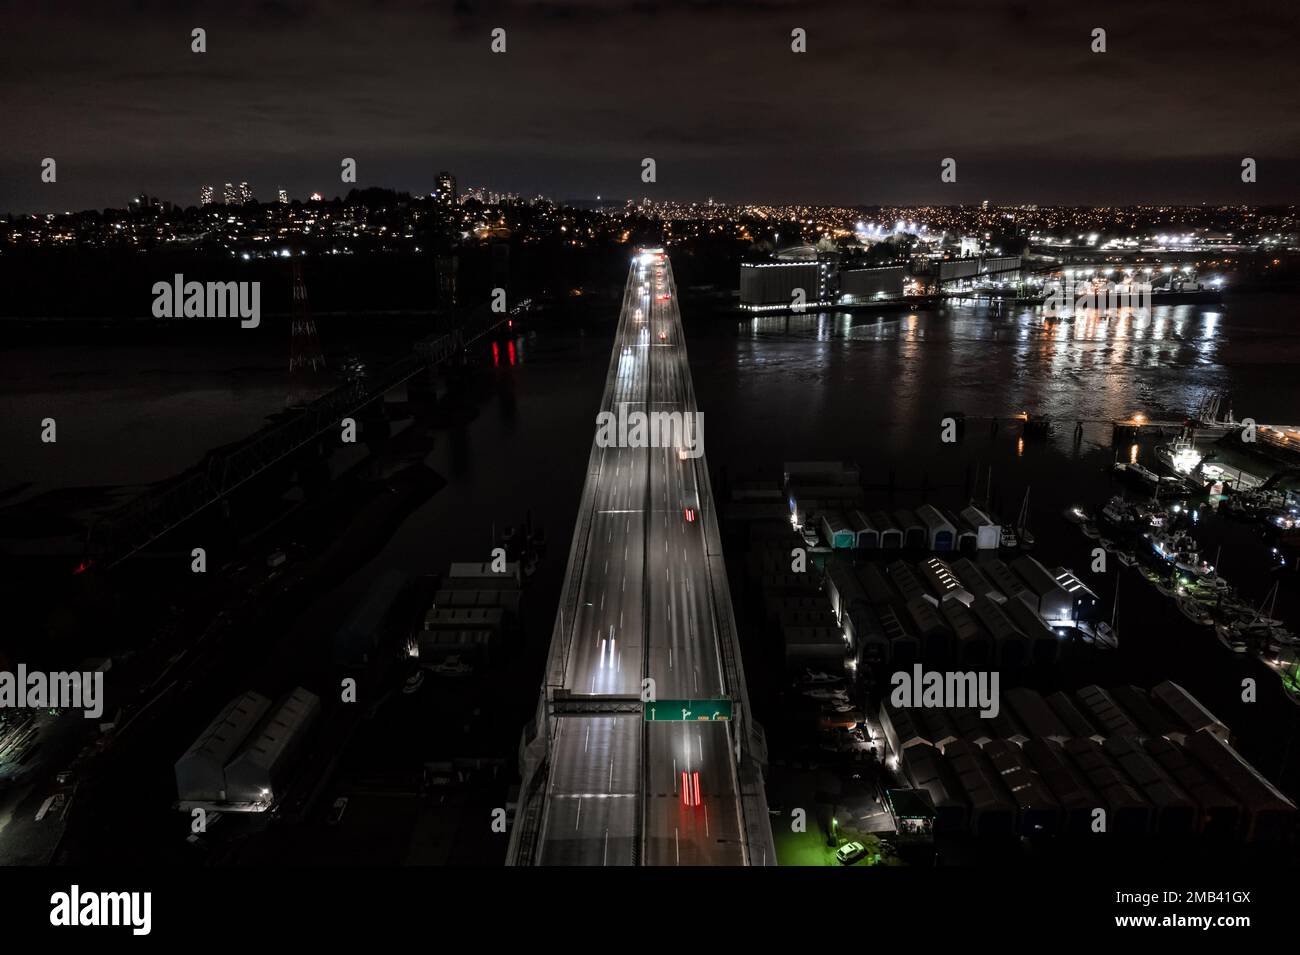 Vue de nuit sur la rue, circulation rapide, pont sur l'eau, voitures traînées légères, réseau de transport, route. Banque D'Images